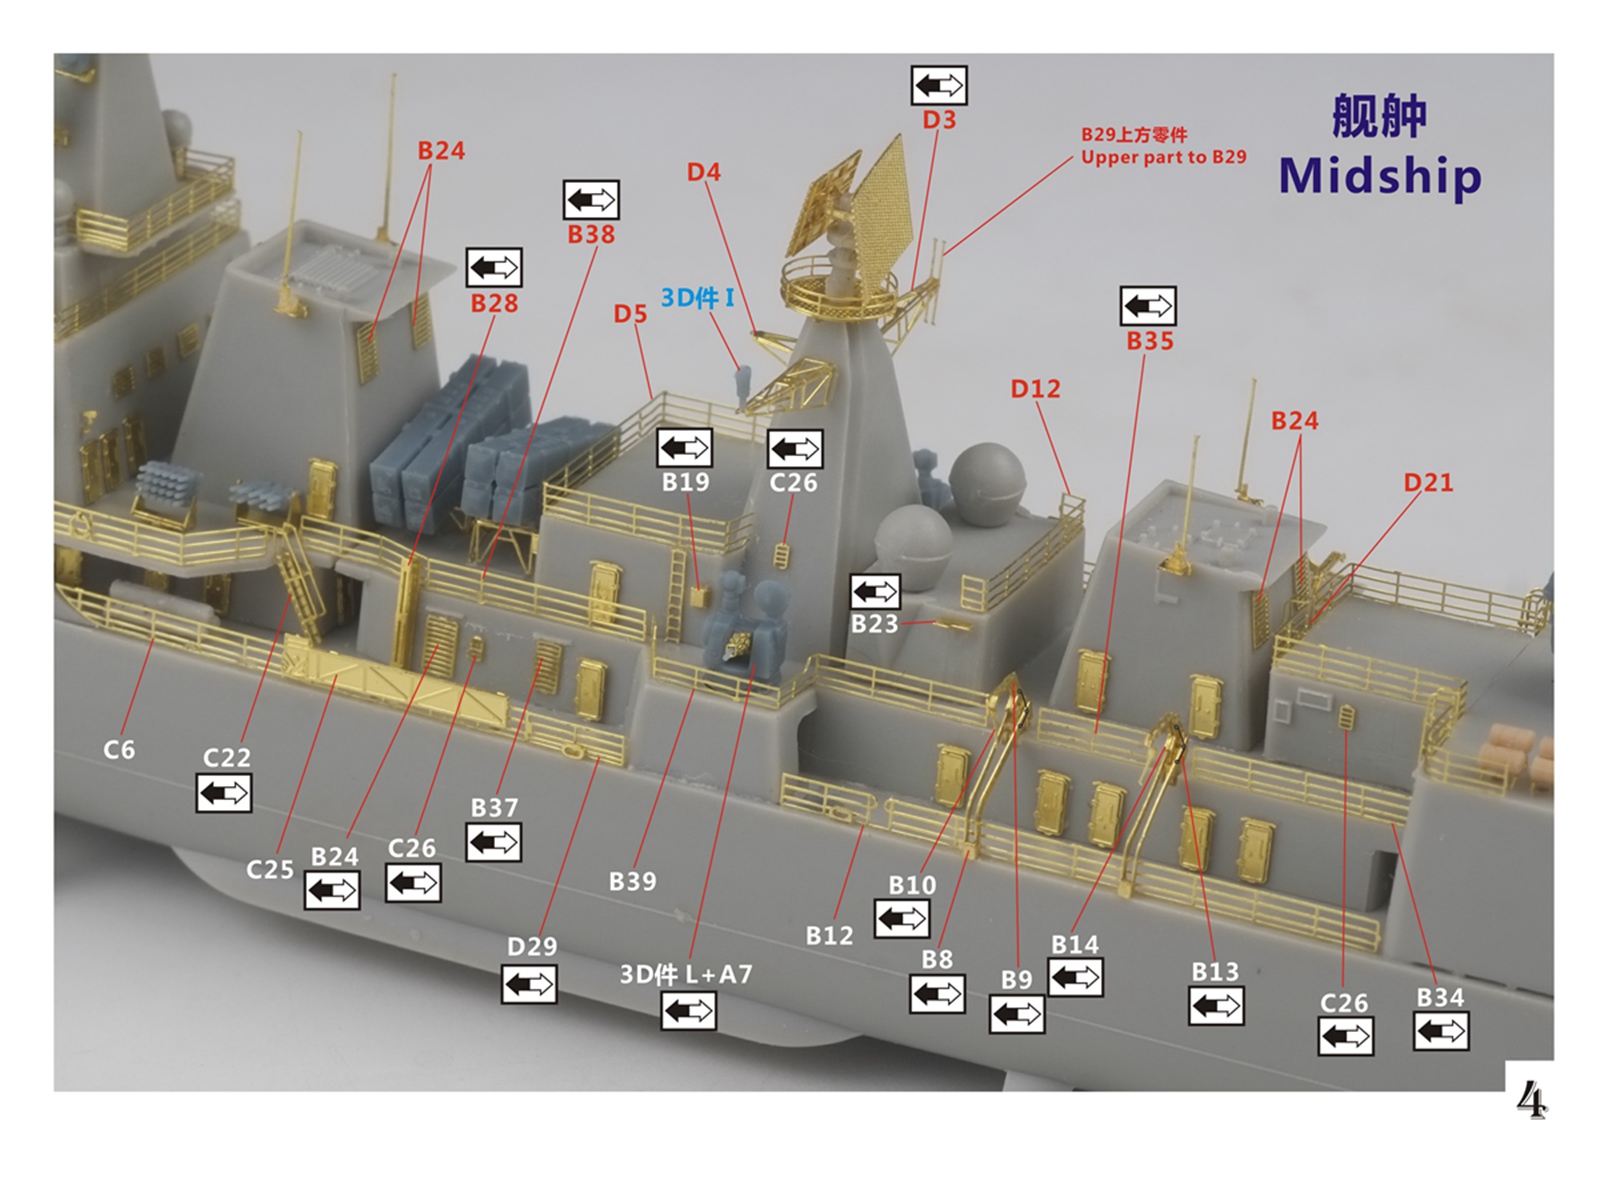 1/700 现代中国海军051C型驱逐舰升级改造套件(配小号手06731) - 点击图像关闭